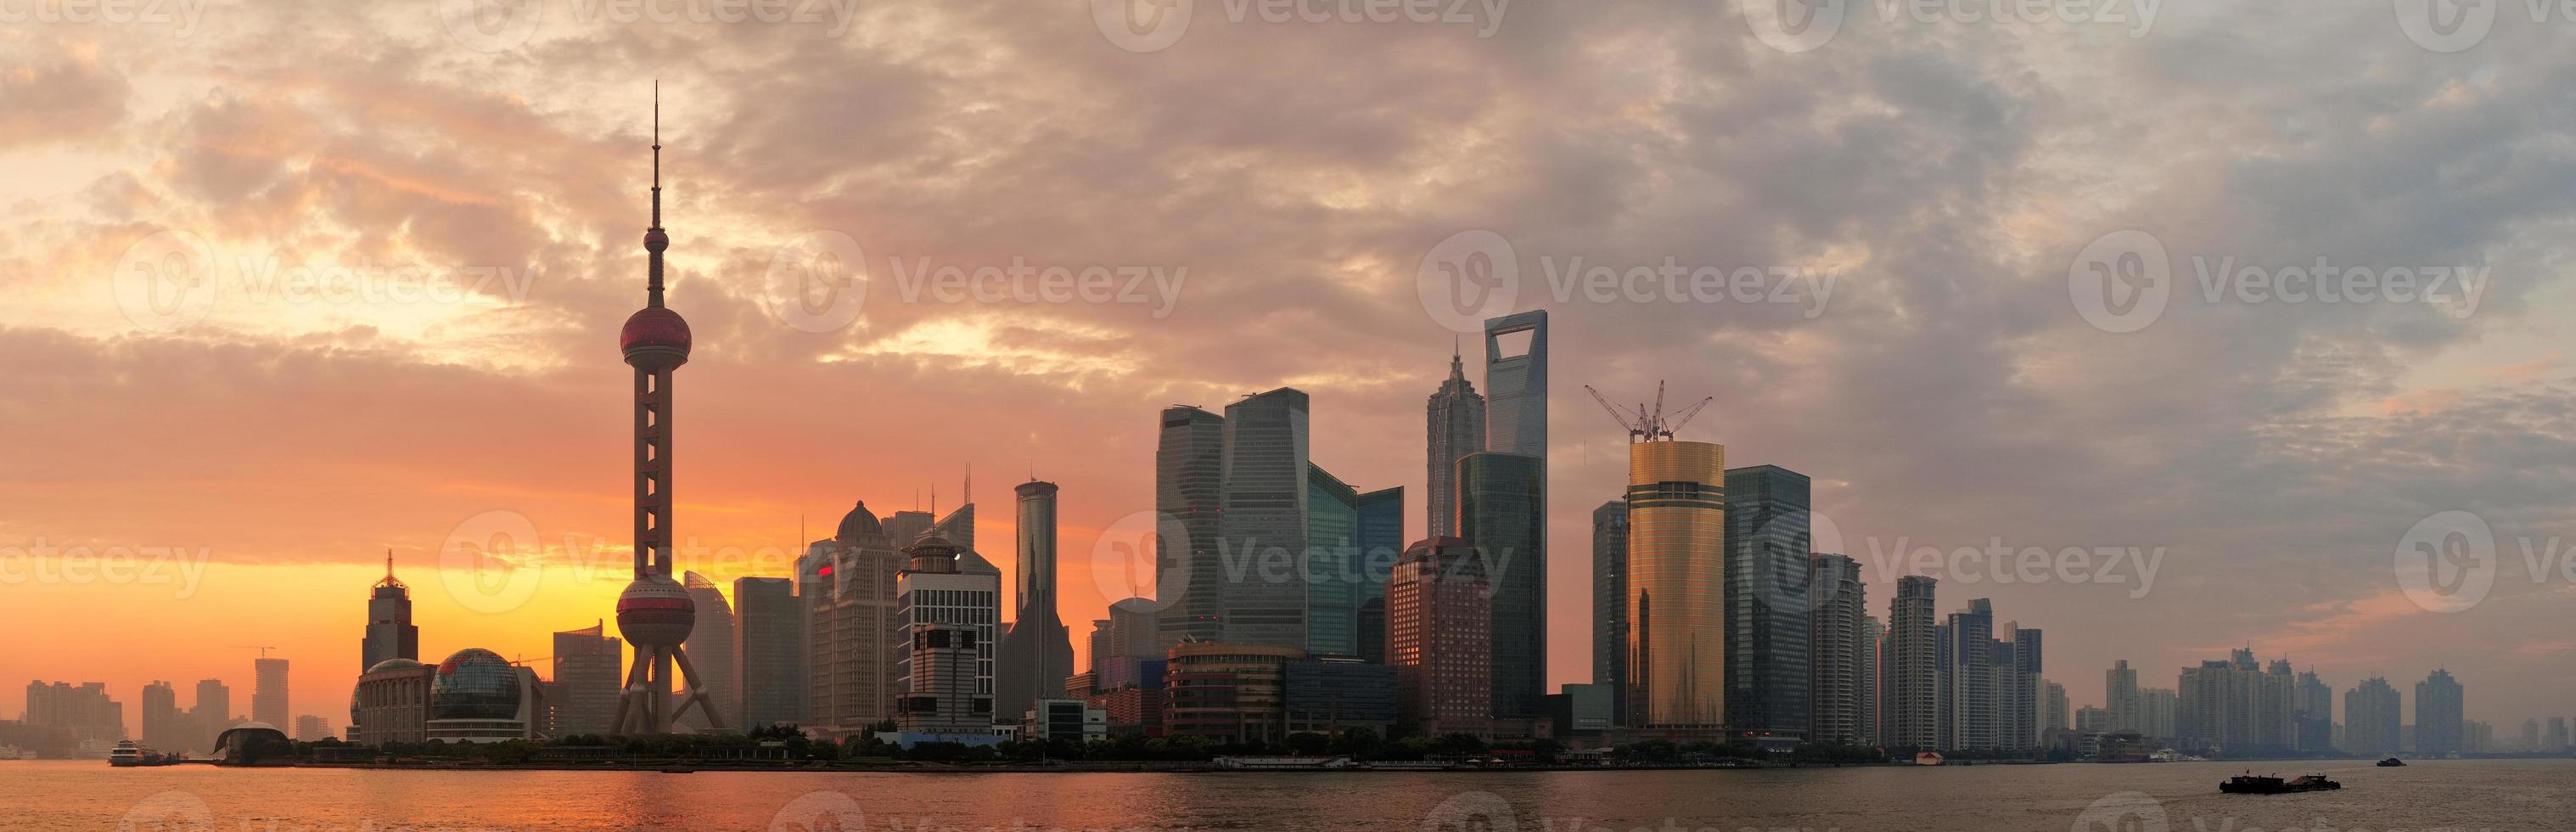 Skyline-Silhouette am Morgen von Shanghai foto